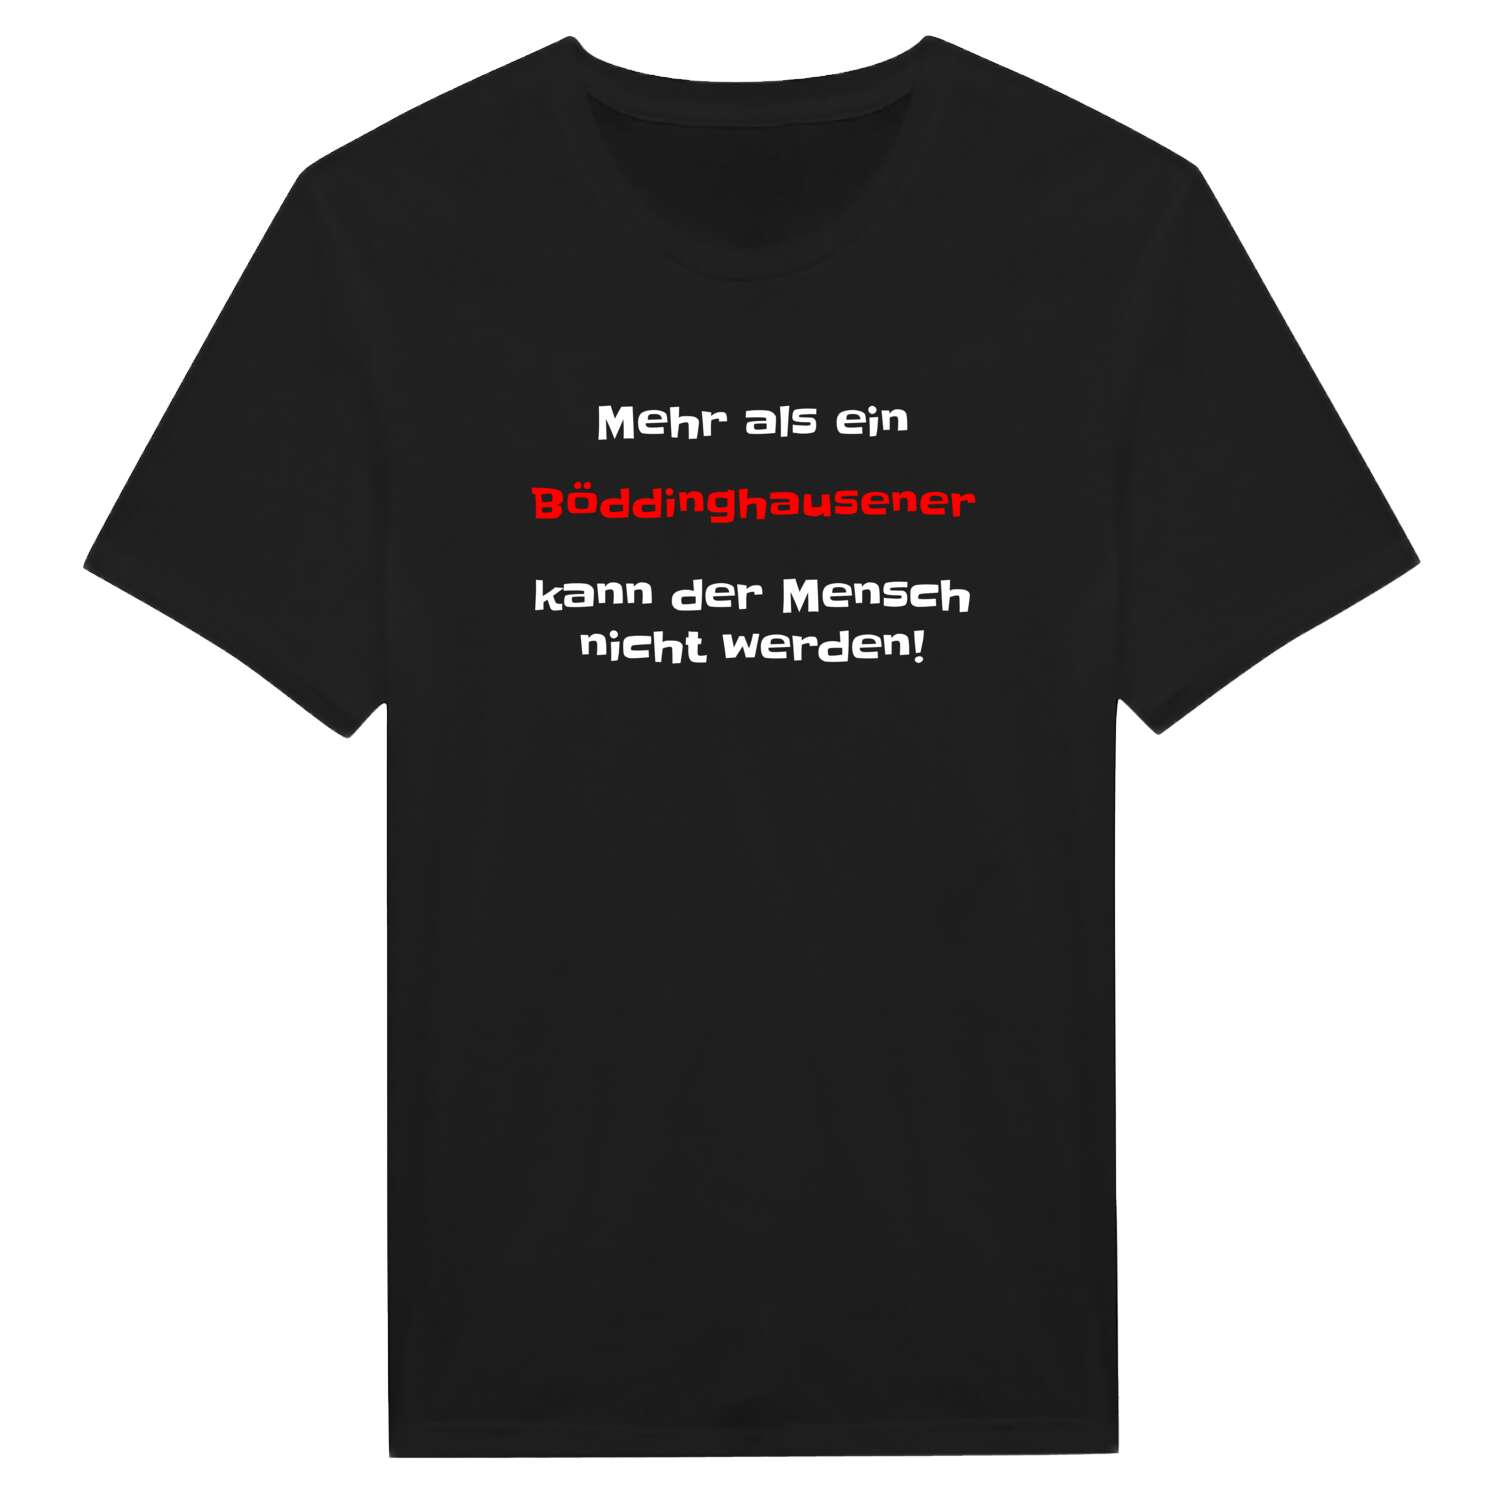 Böddinghausen T-Shirt »Mehr als ein«